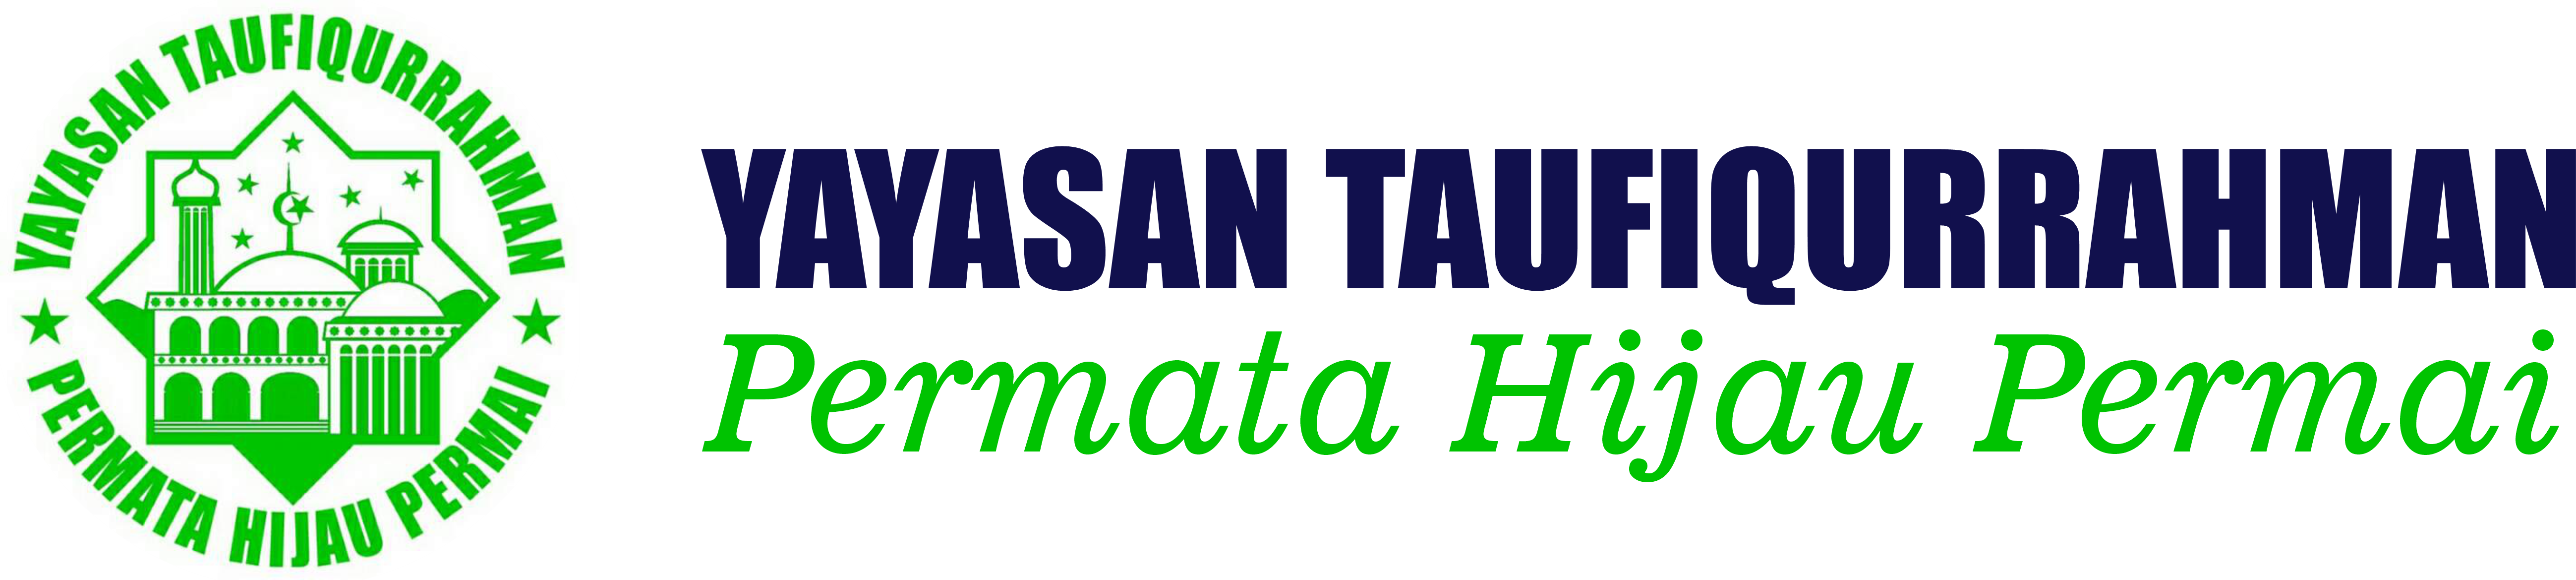 Yayasan Taufiqurrahman